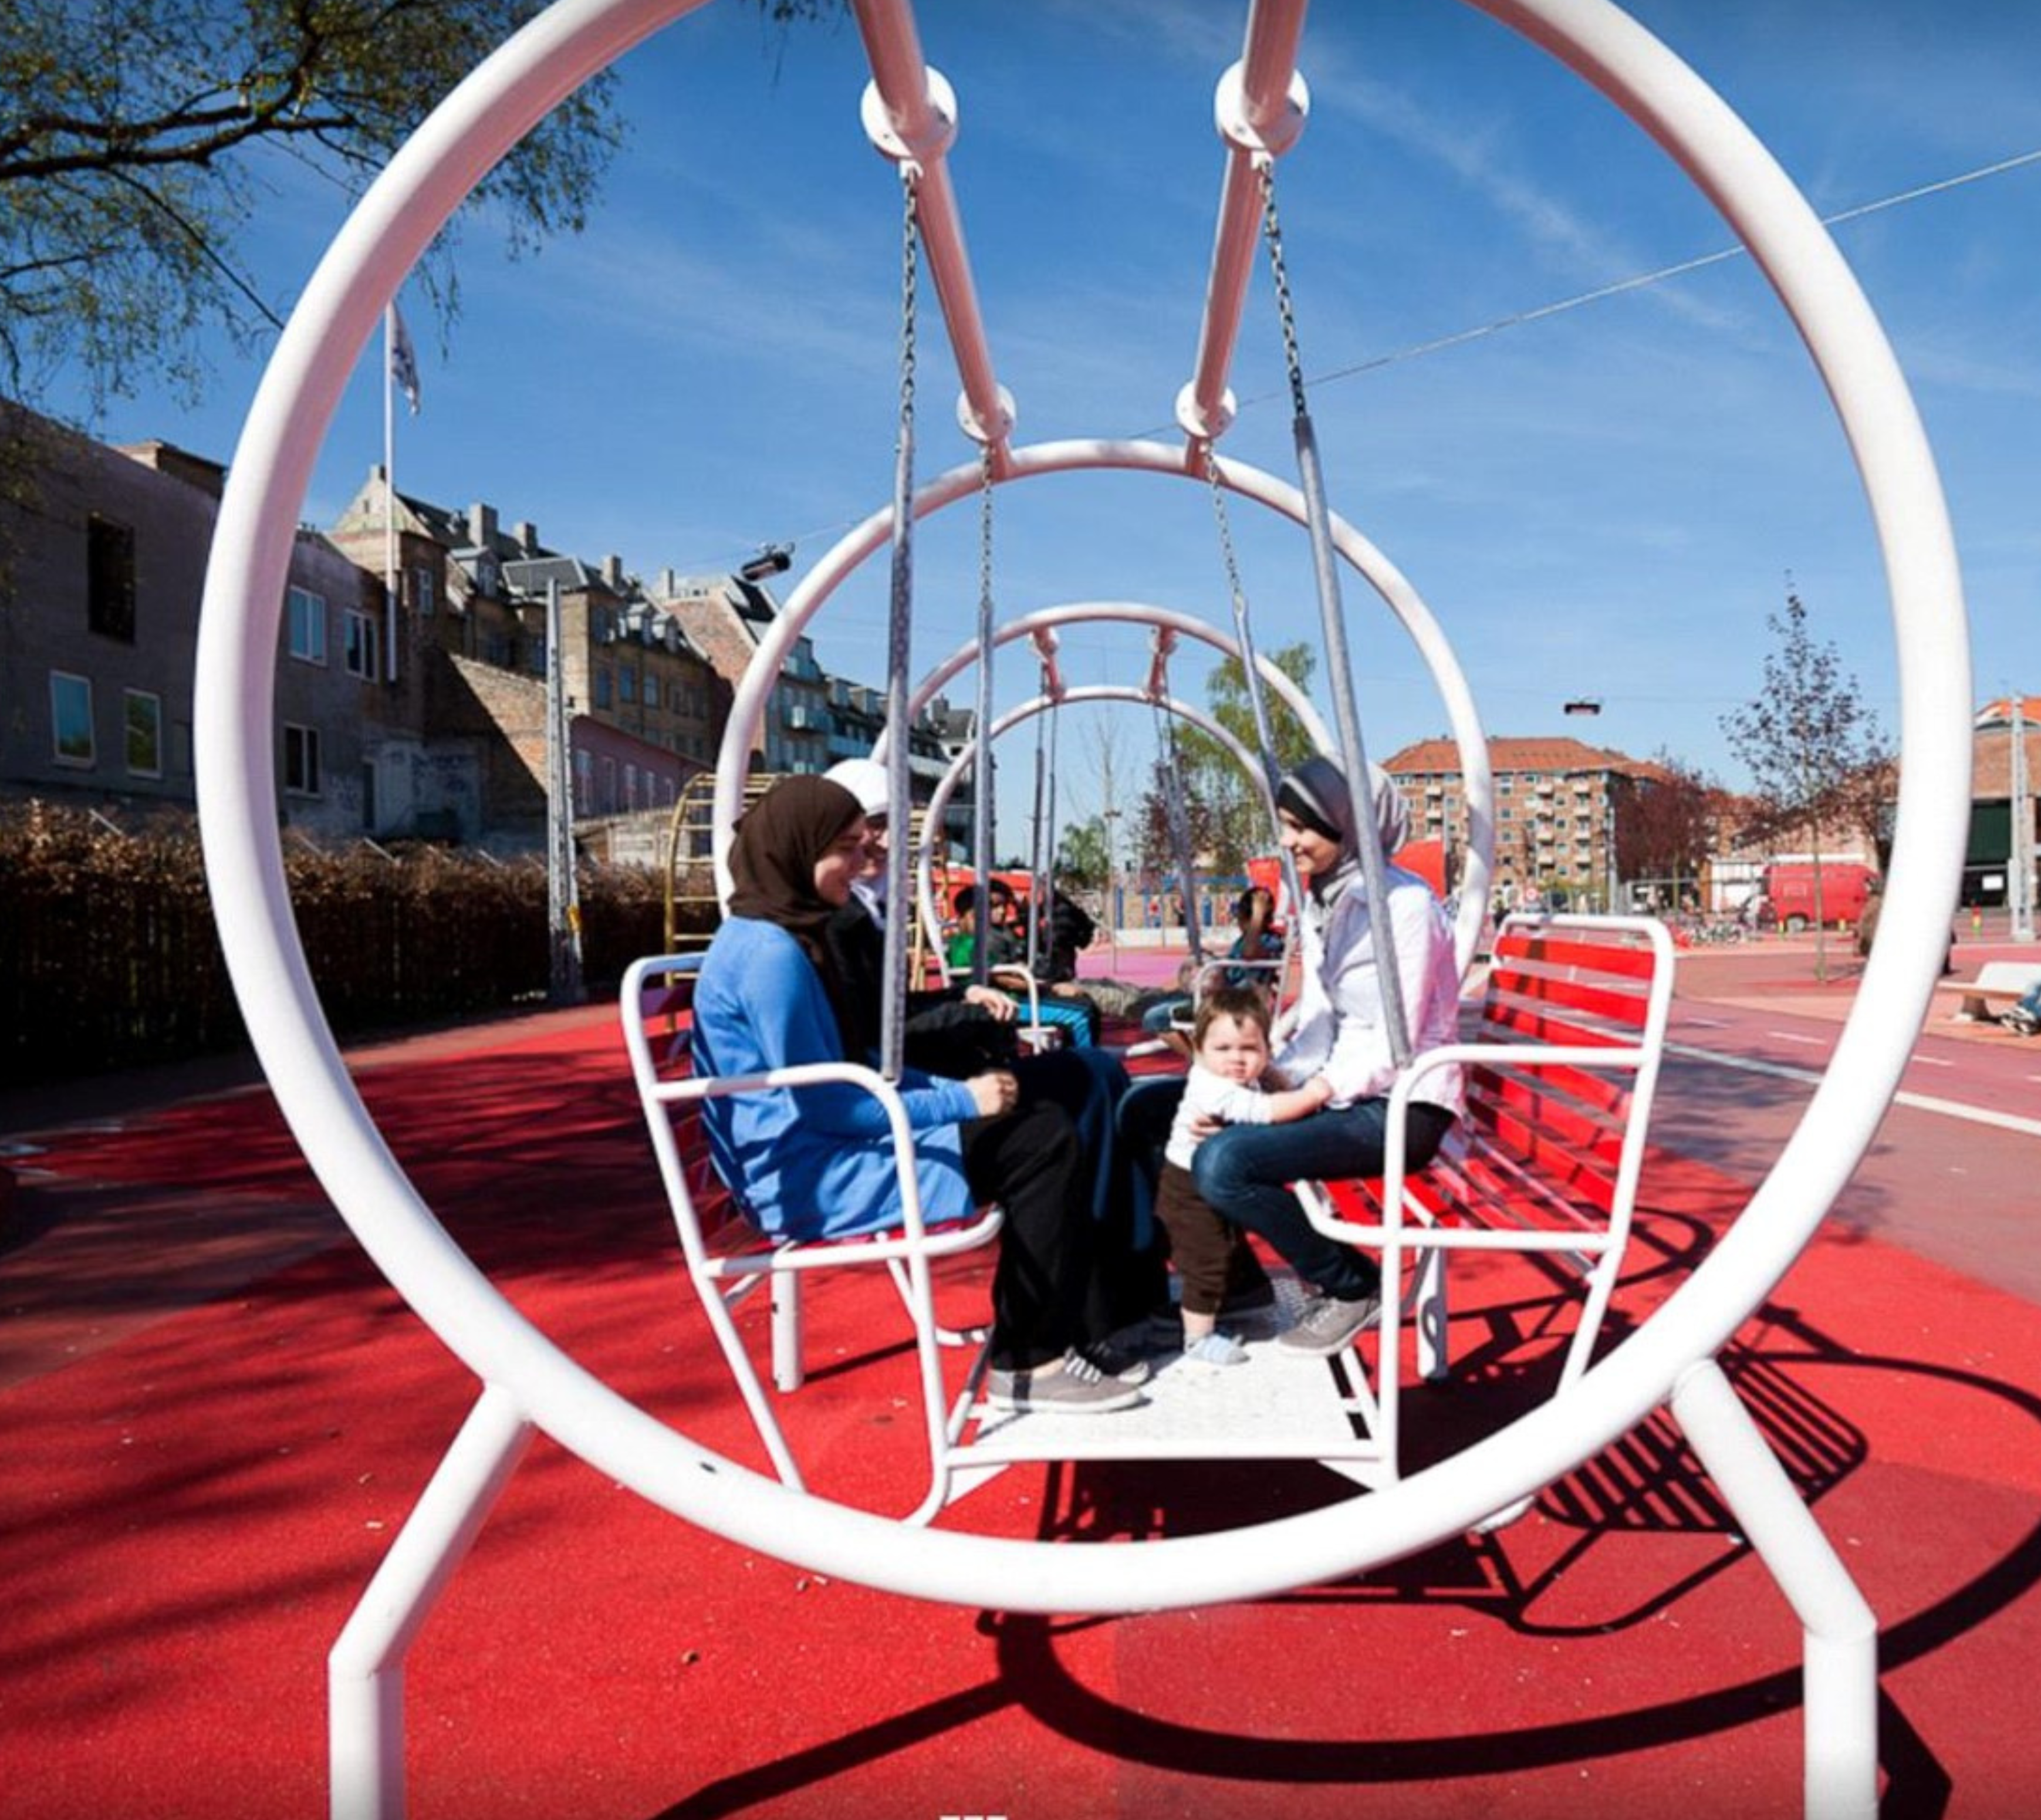 11. Copenhagen, the Superkilen park, a play structure